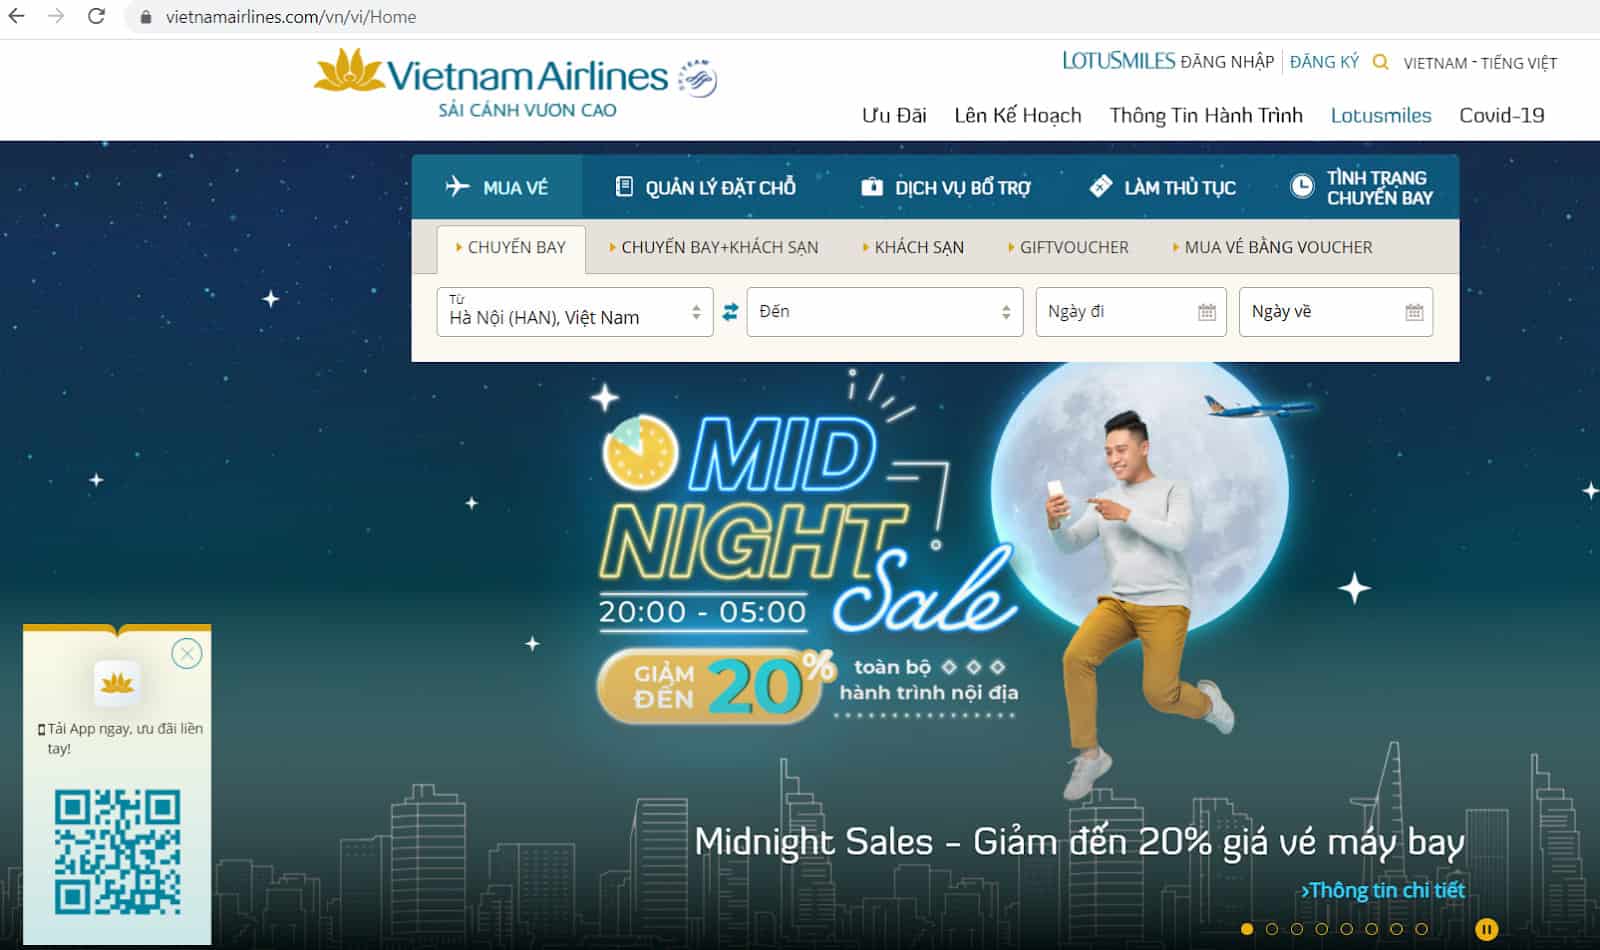 Hướng dẫn hoàn đổi vé Vietnam Airlines - Truy cập trang web